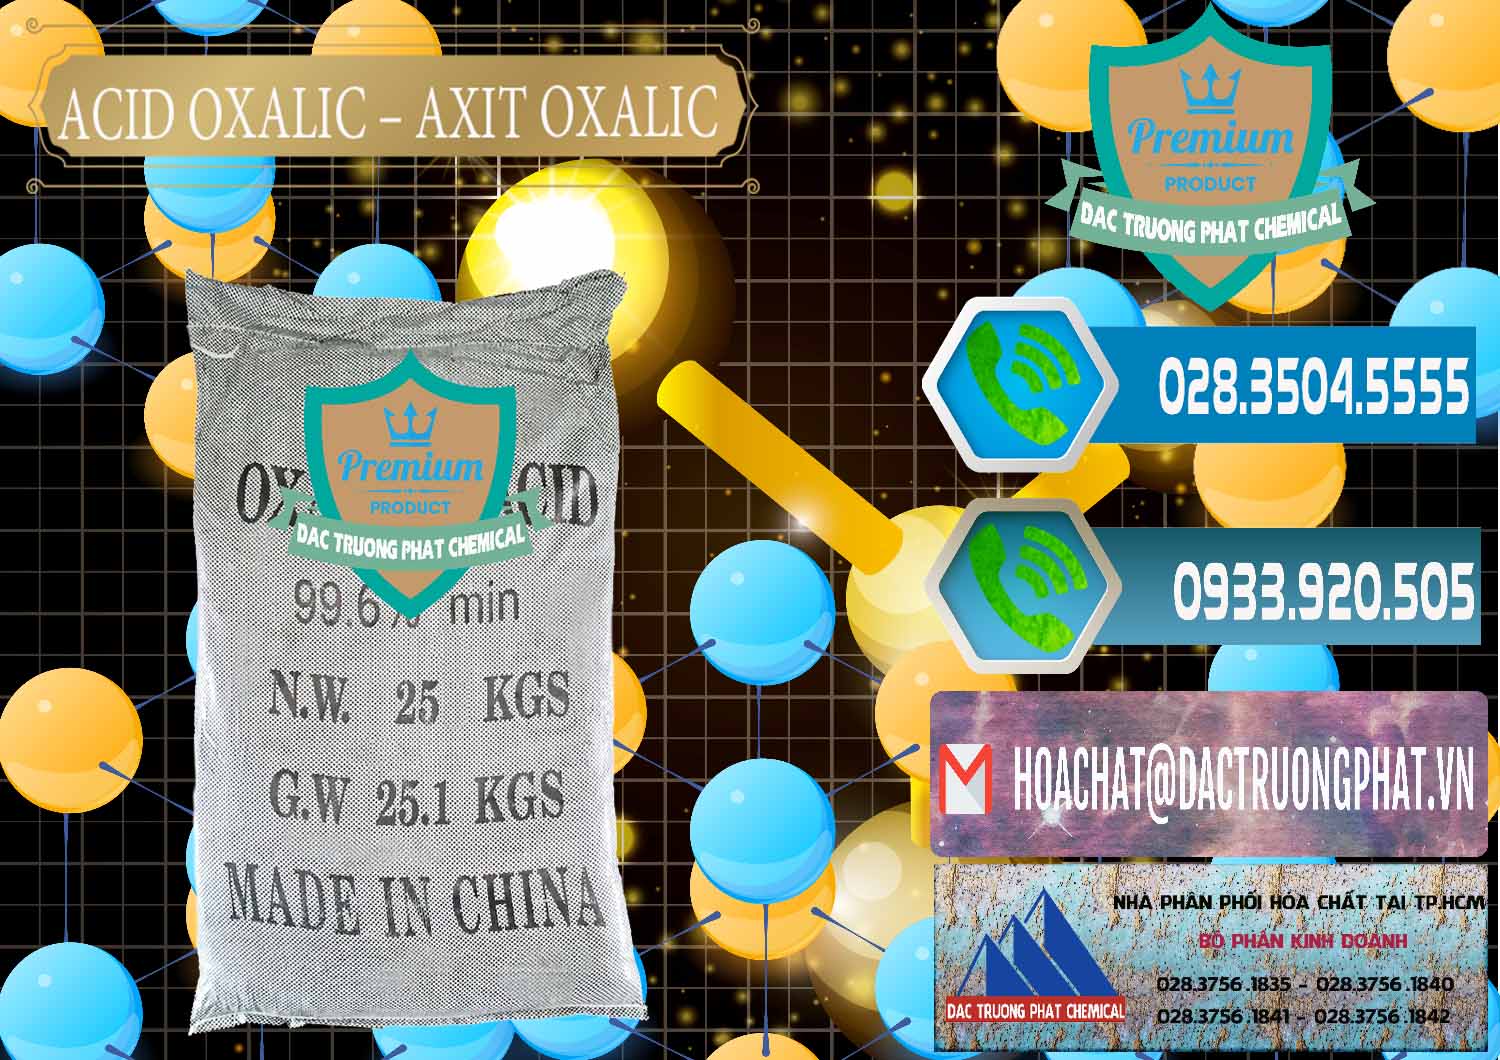 Cty chuyên bán & phân phối Acid Oxalic – Axit Oxalic 99.6% Trung Quốc China - 0014 - Nhà phân phối & cung cấp hóa chất tại TP.HCM - congtyhoachat.net